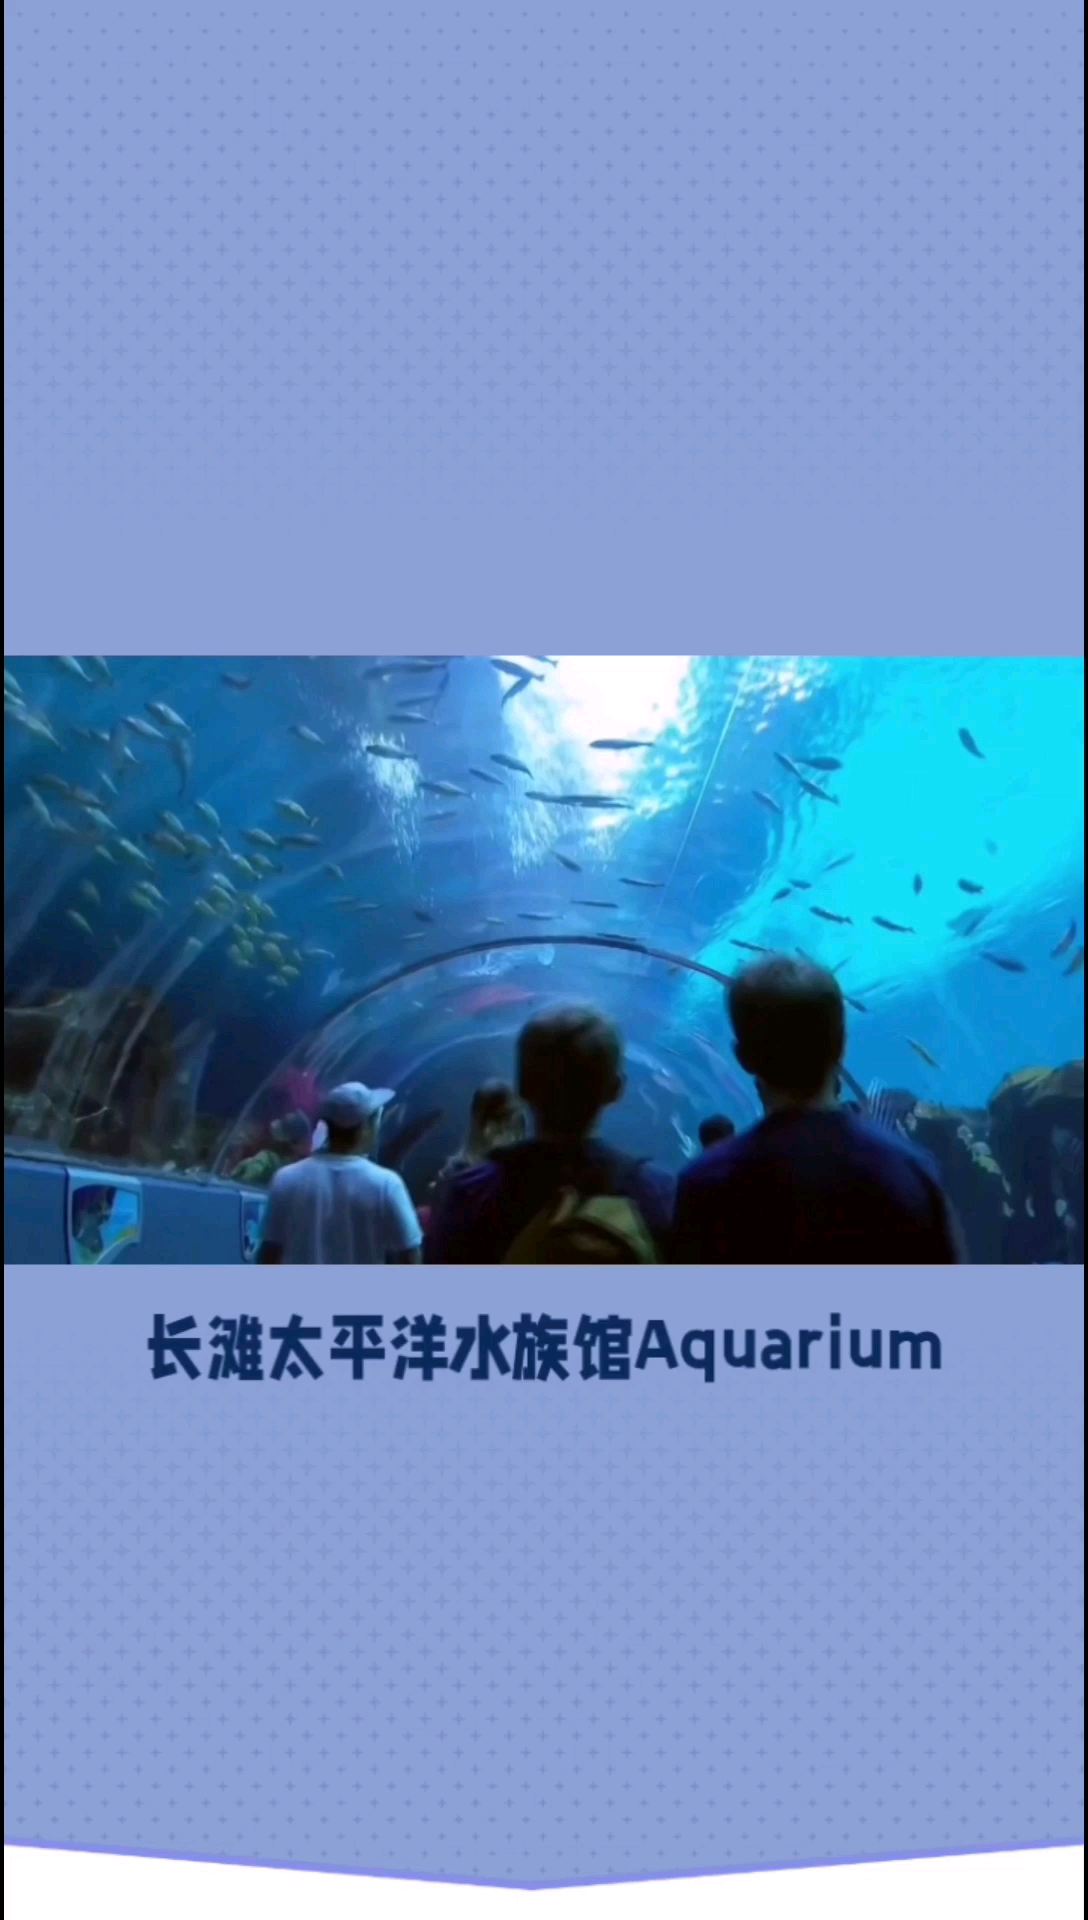 长滩太平洋水族馆-探索海洋生物的奇妙世界